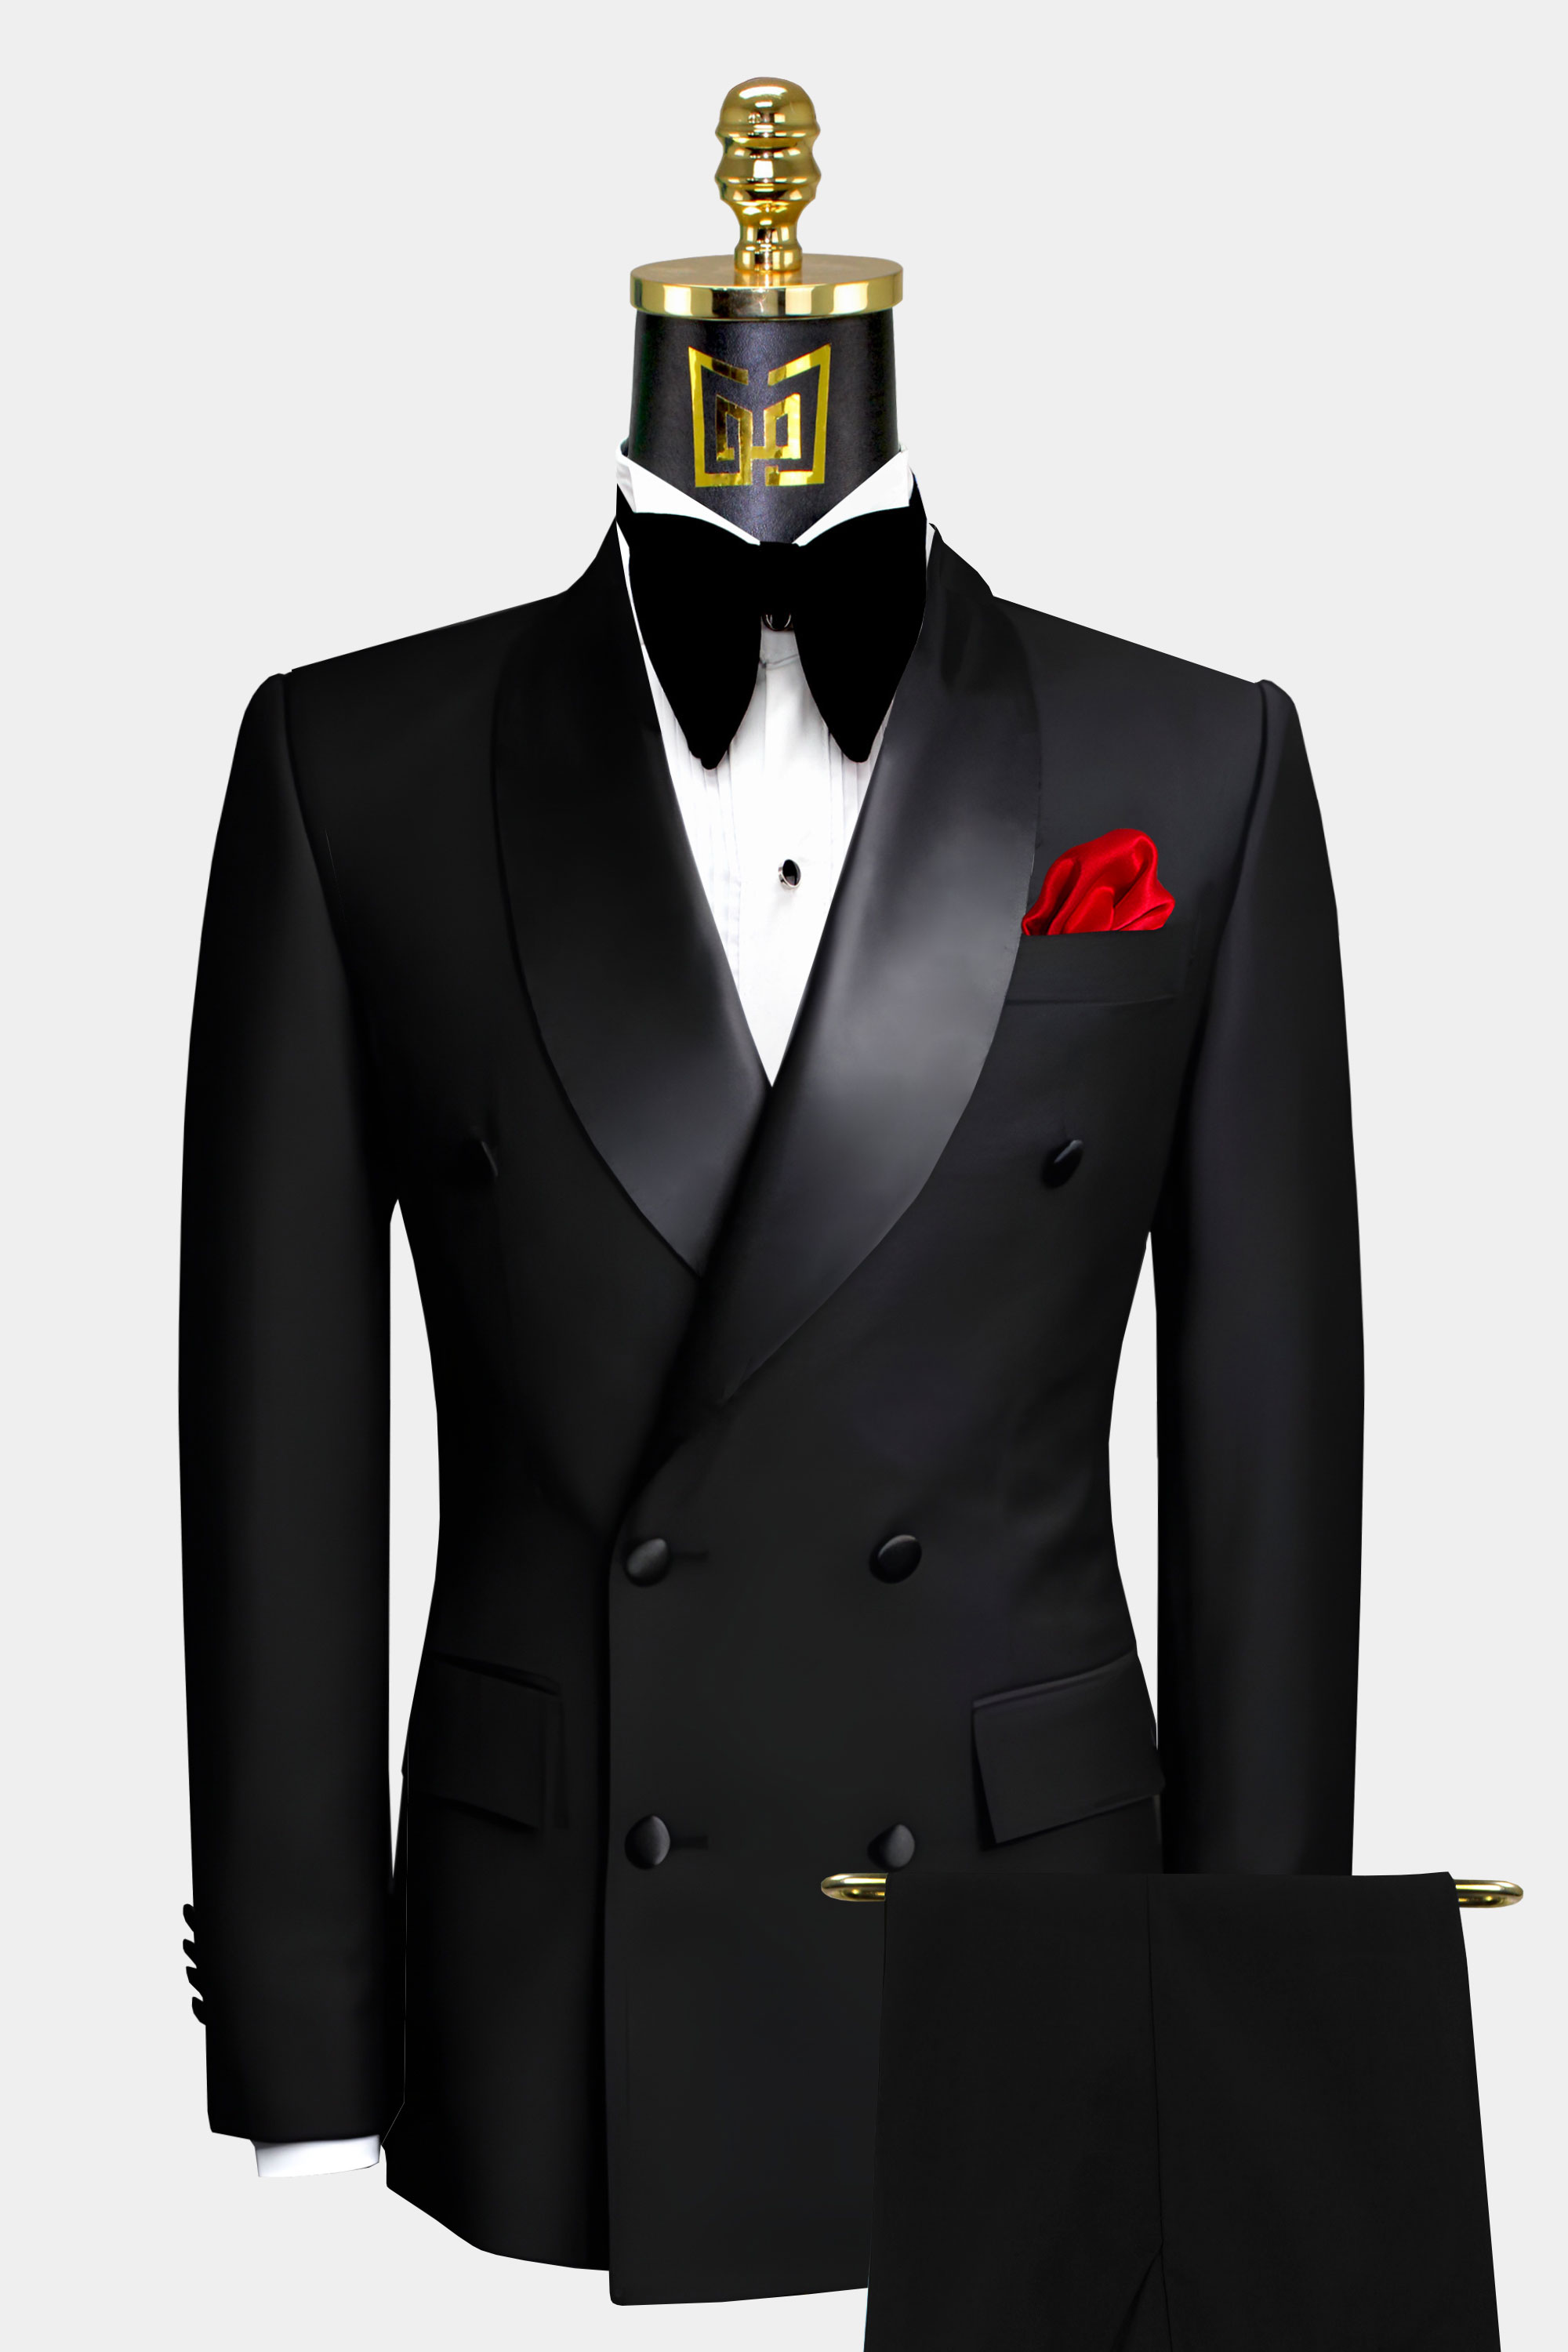 Men 2 Piece Suit Black Tuxedo Suit Perfect for Wedding One 